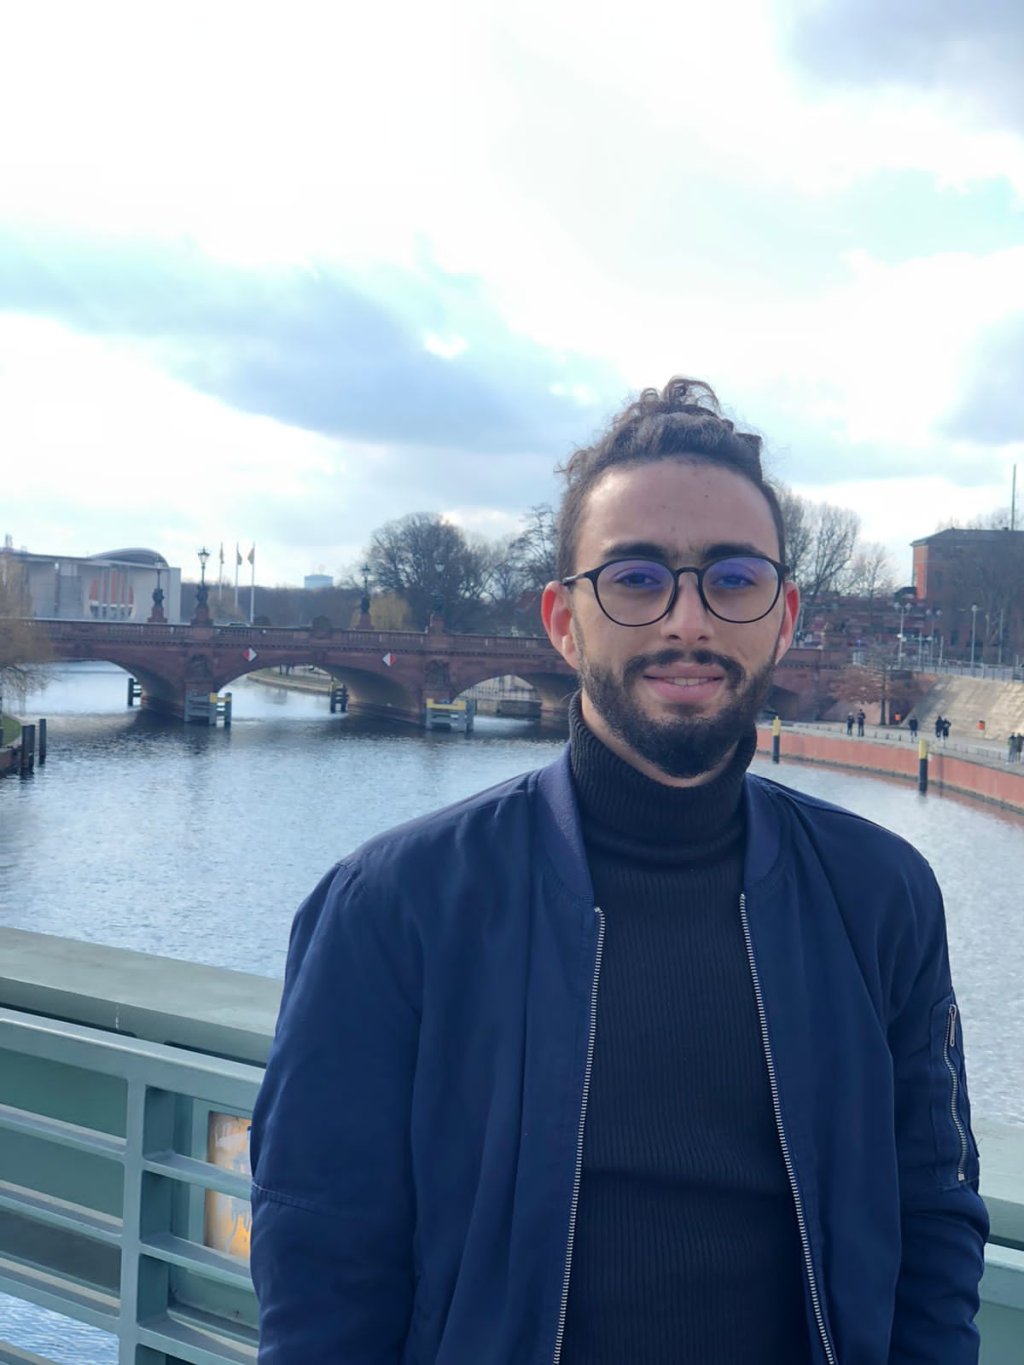 عبد العزيز، طالب مغربي حاصل على إقامة طالب في أوكرانيا، يتواجد حاليا في ألمانيا